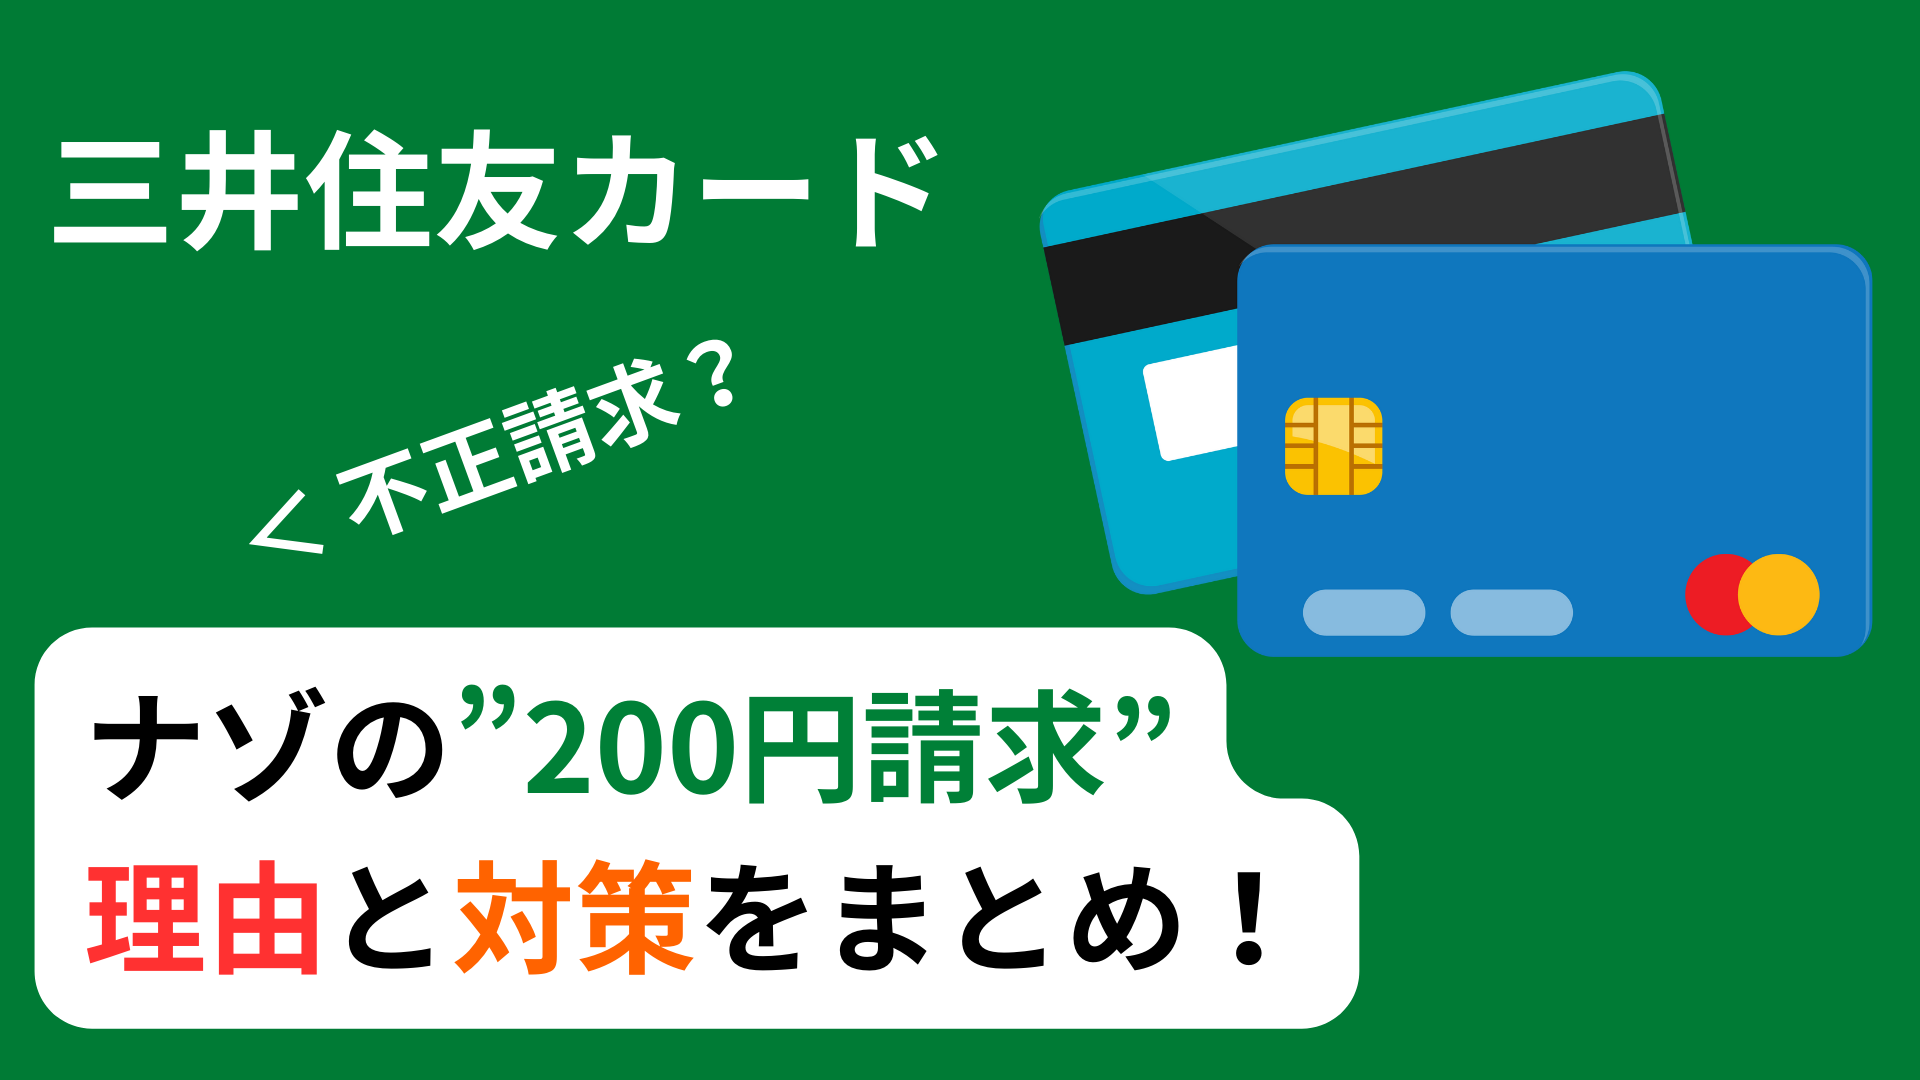 三井住友カード「謎の200円請求」の理由と対策をまとめました